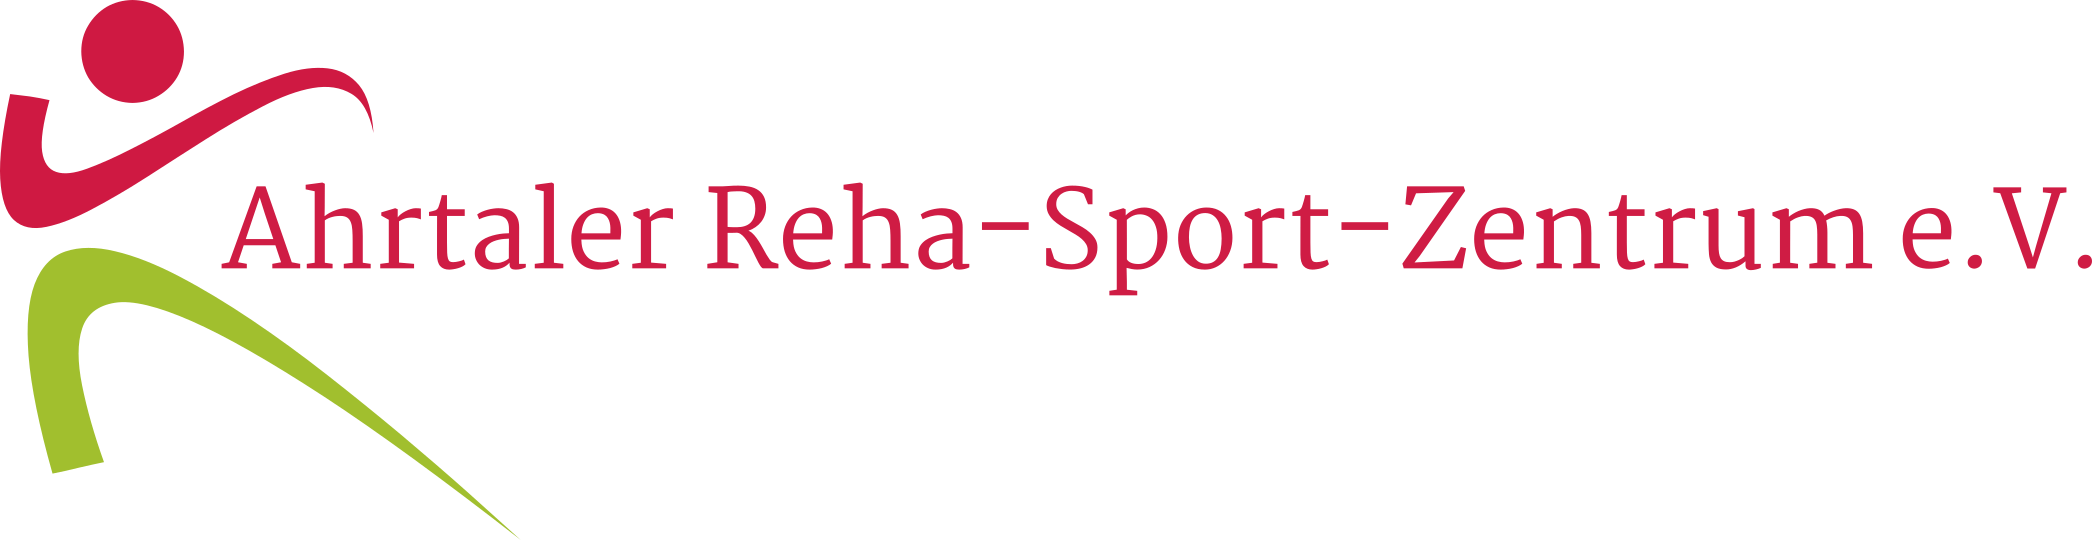 Ahrtaler Reha-Sport-Zentrum e.V.